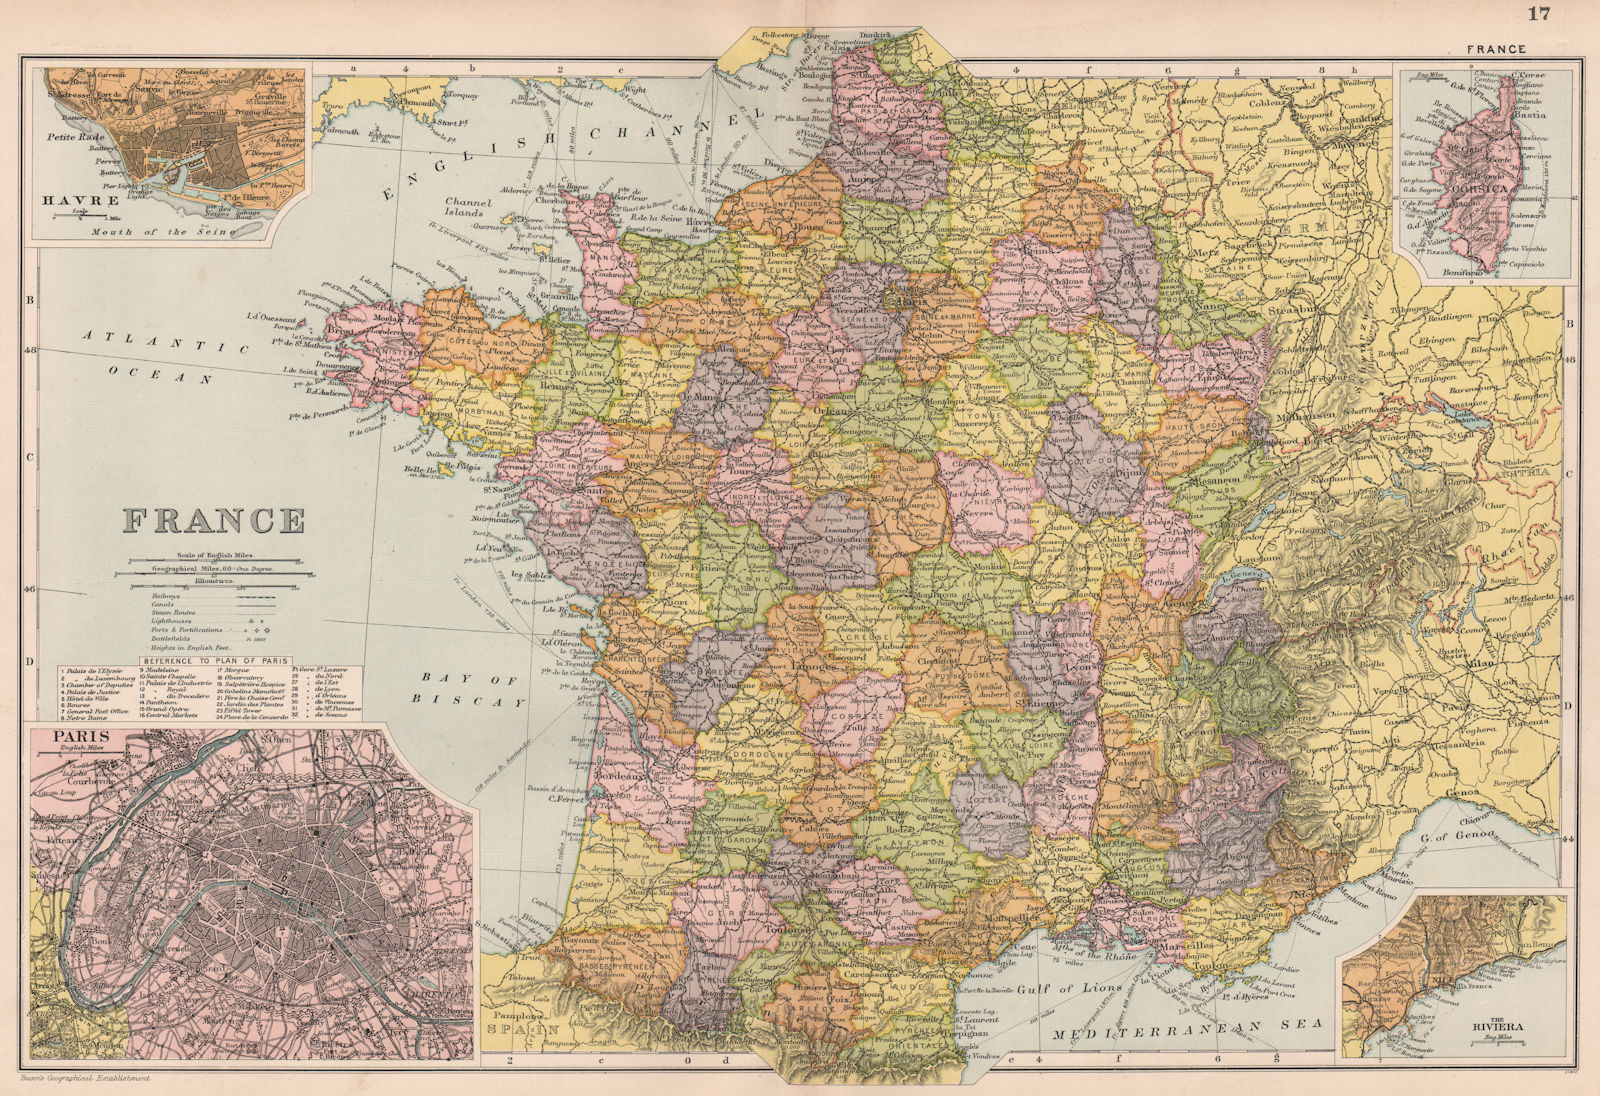 FRANCE showing battlefields/dates. Le Havre & Paris plans. BACON 1903 old map